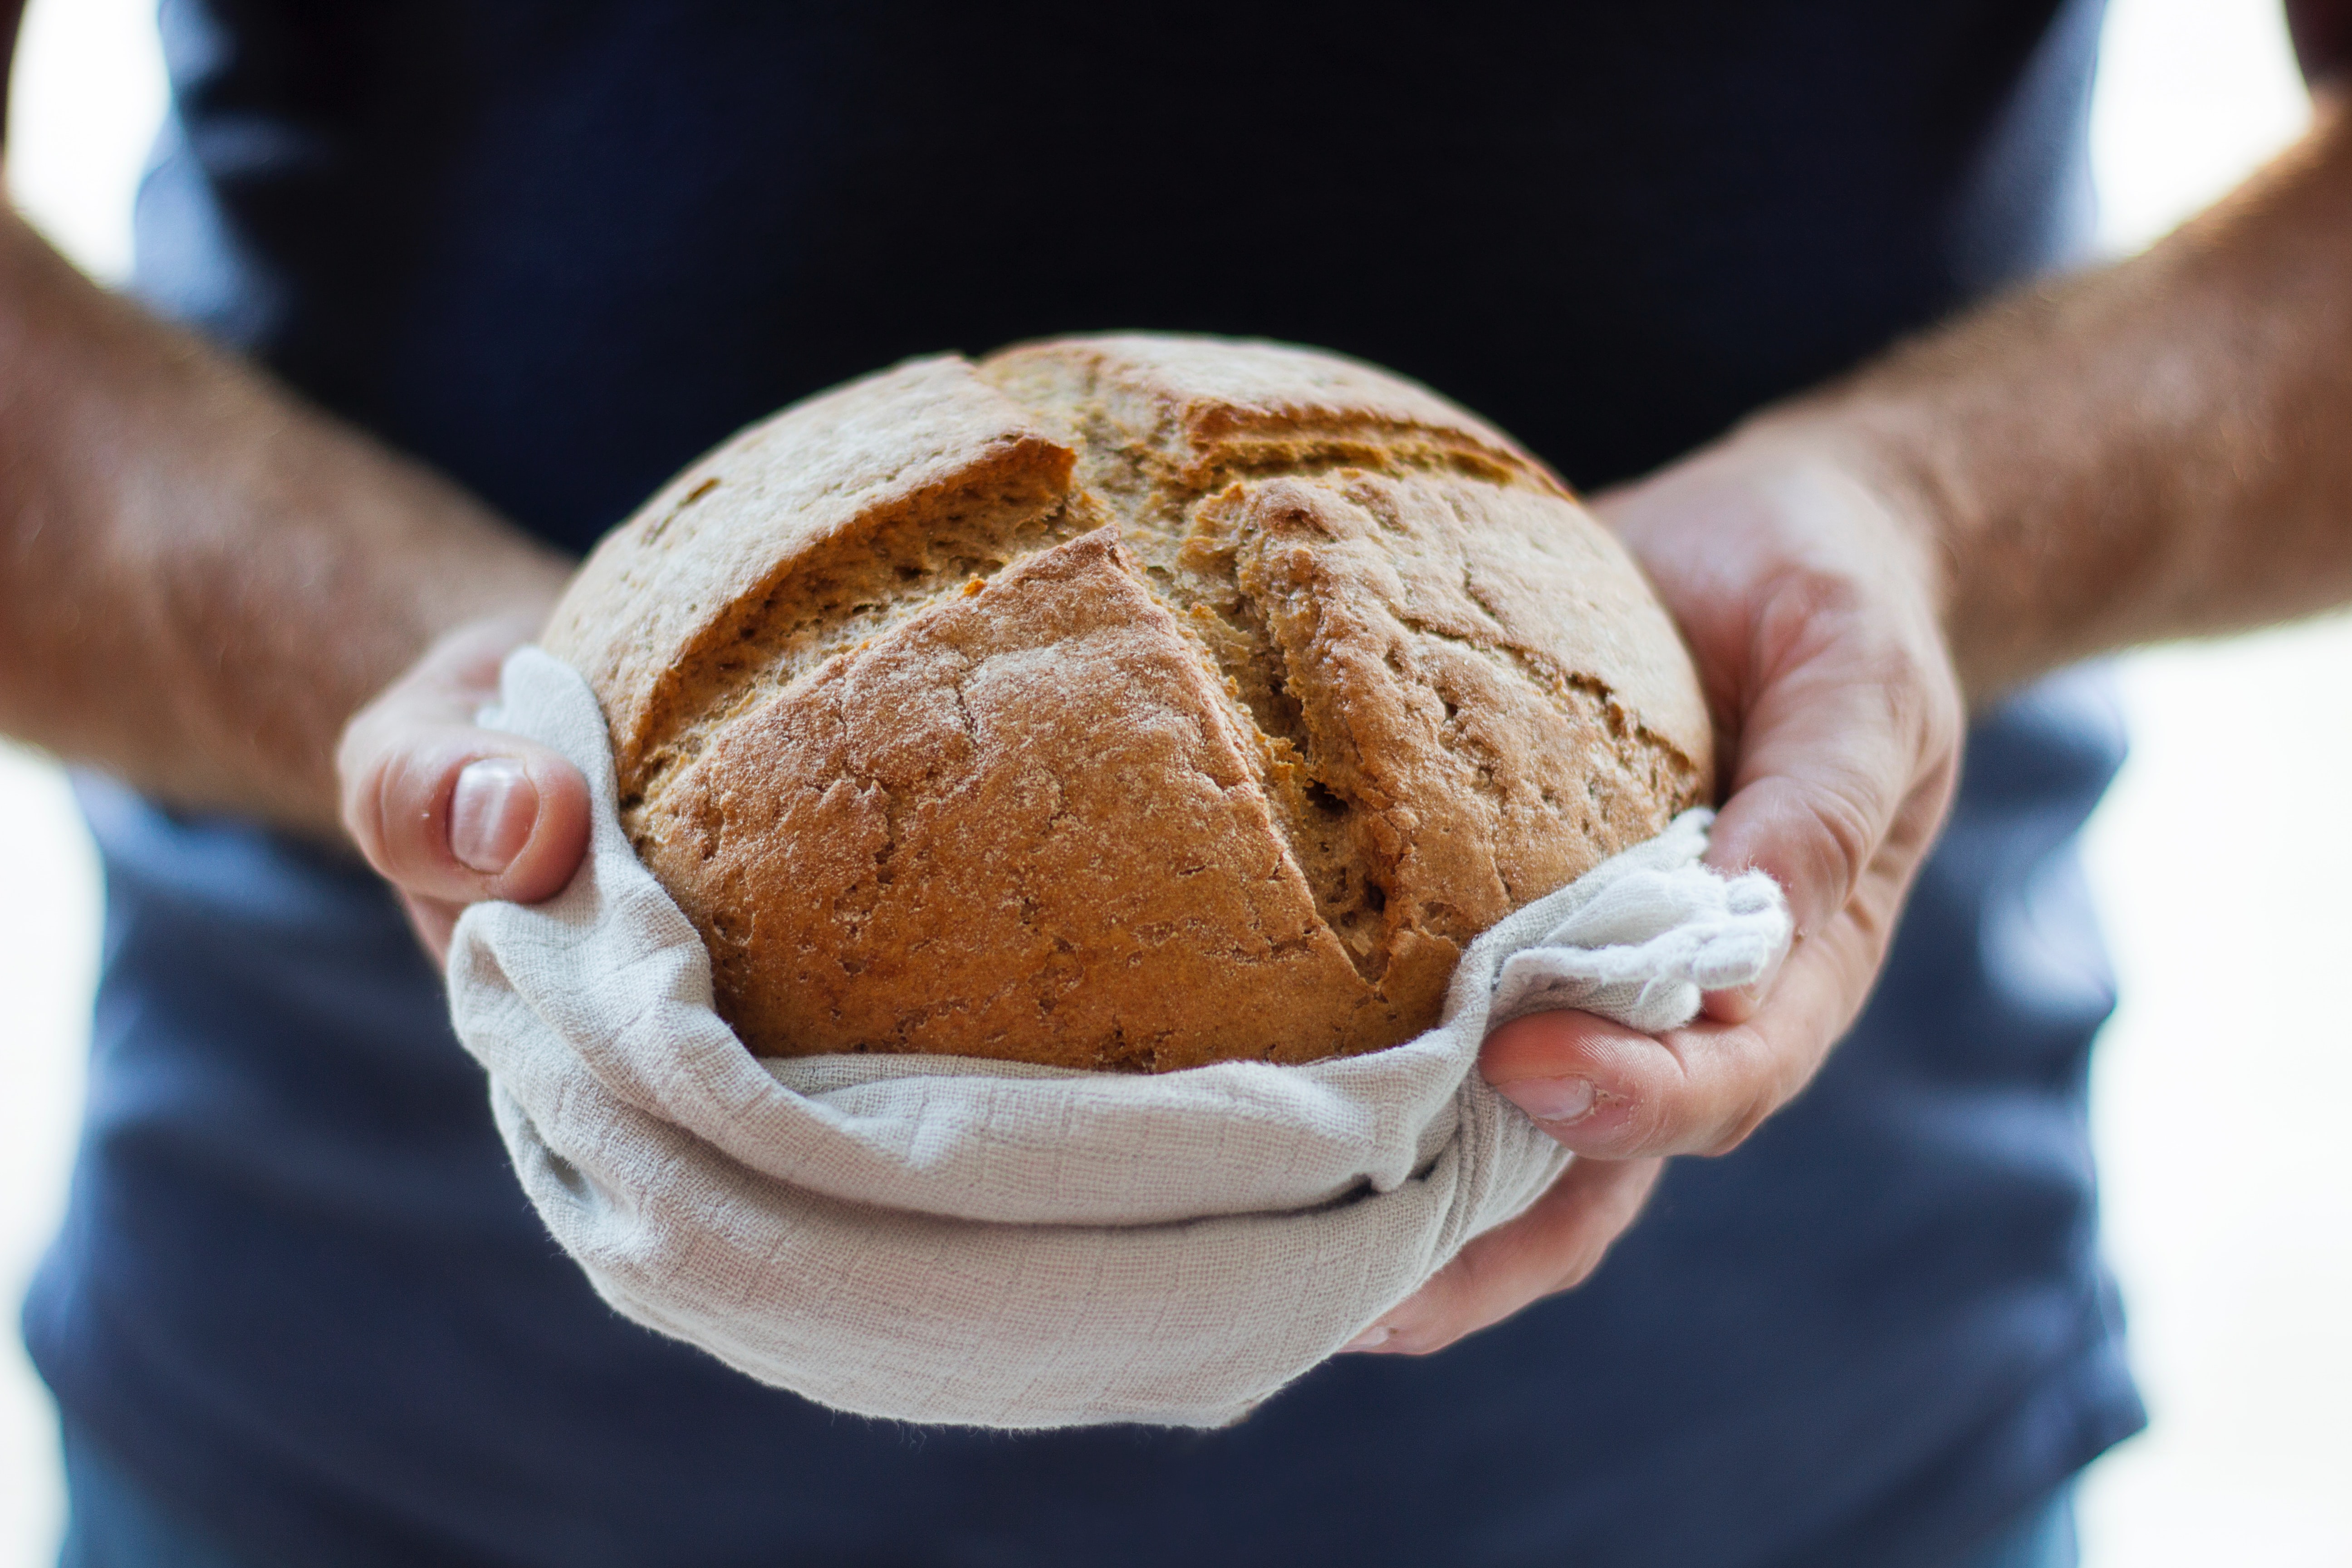 Kuvassa käsissä pideltävä leipä, jonka päällä on ristikuvio.